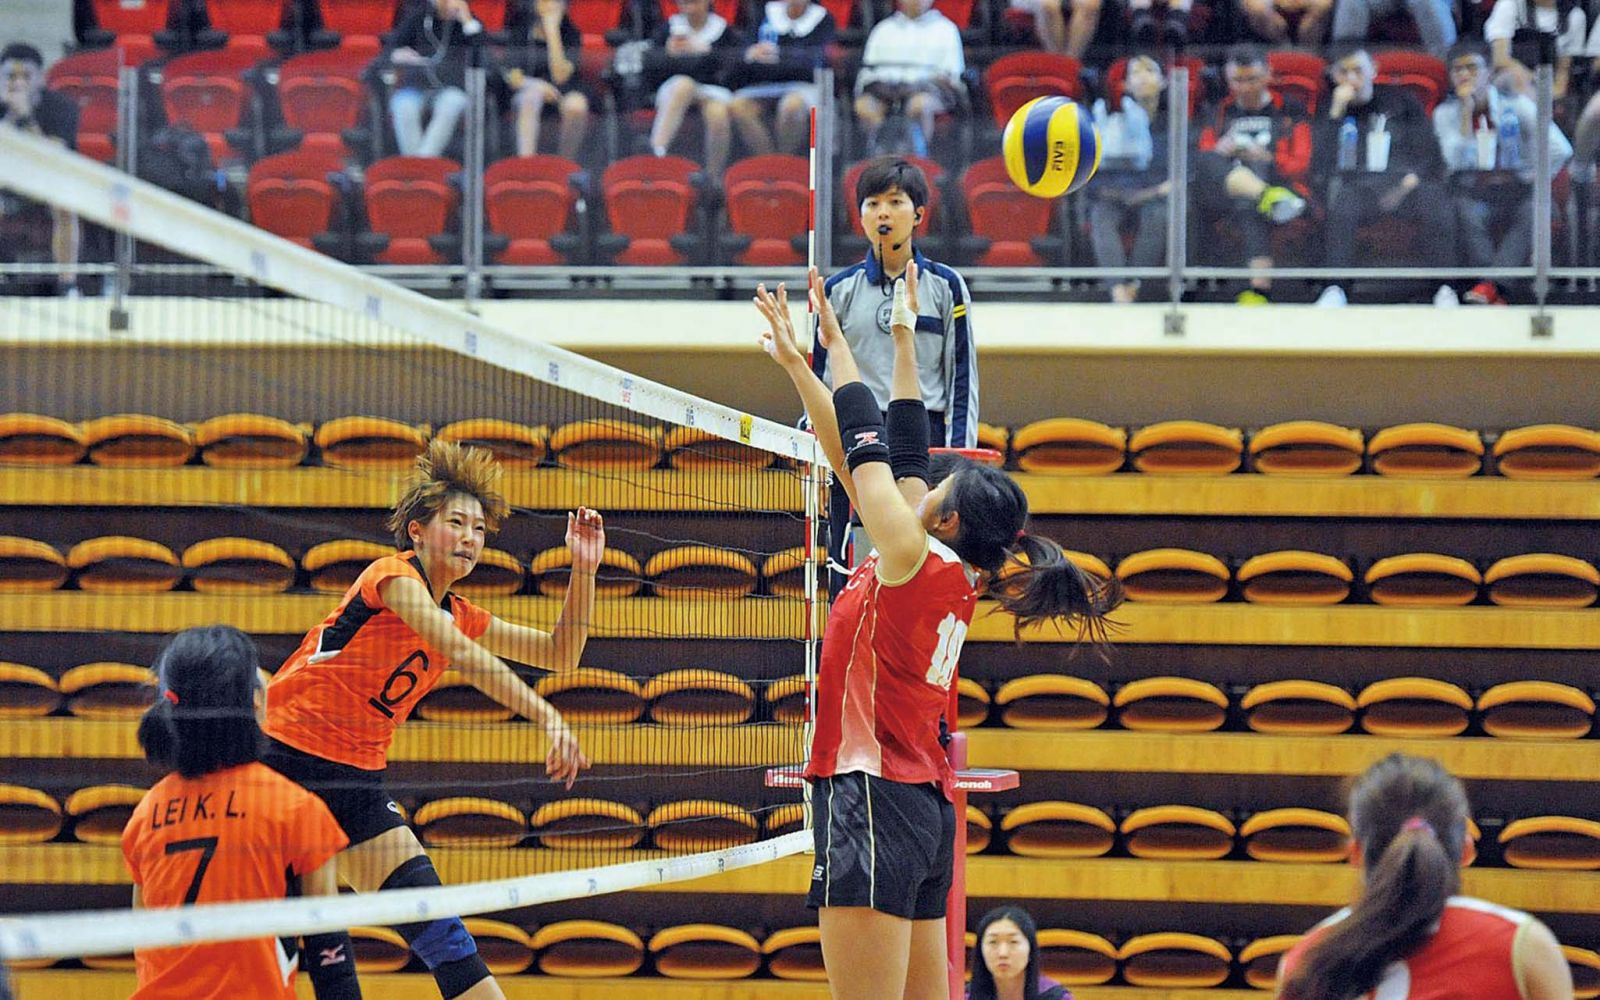 香港男女子隊排球埠際賽同奪冠